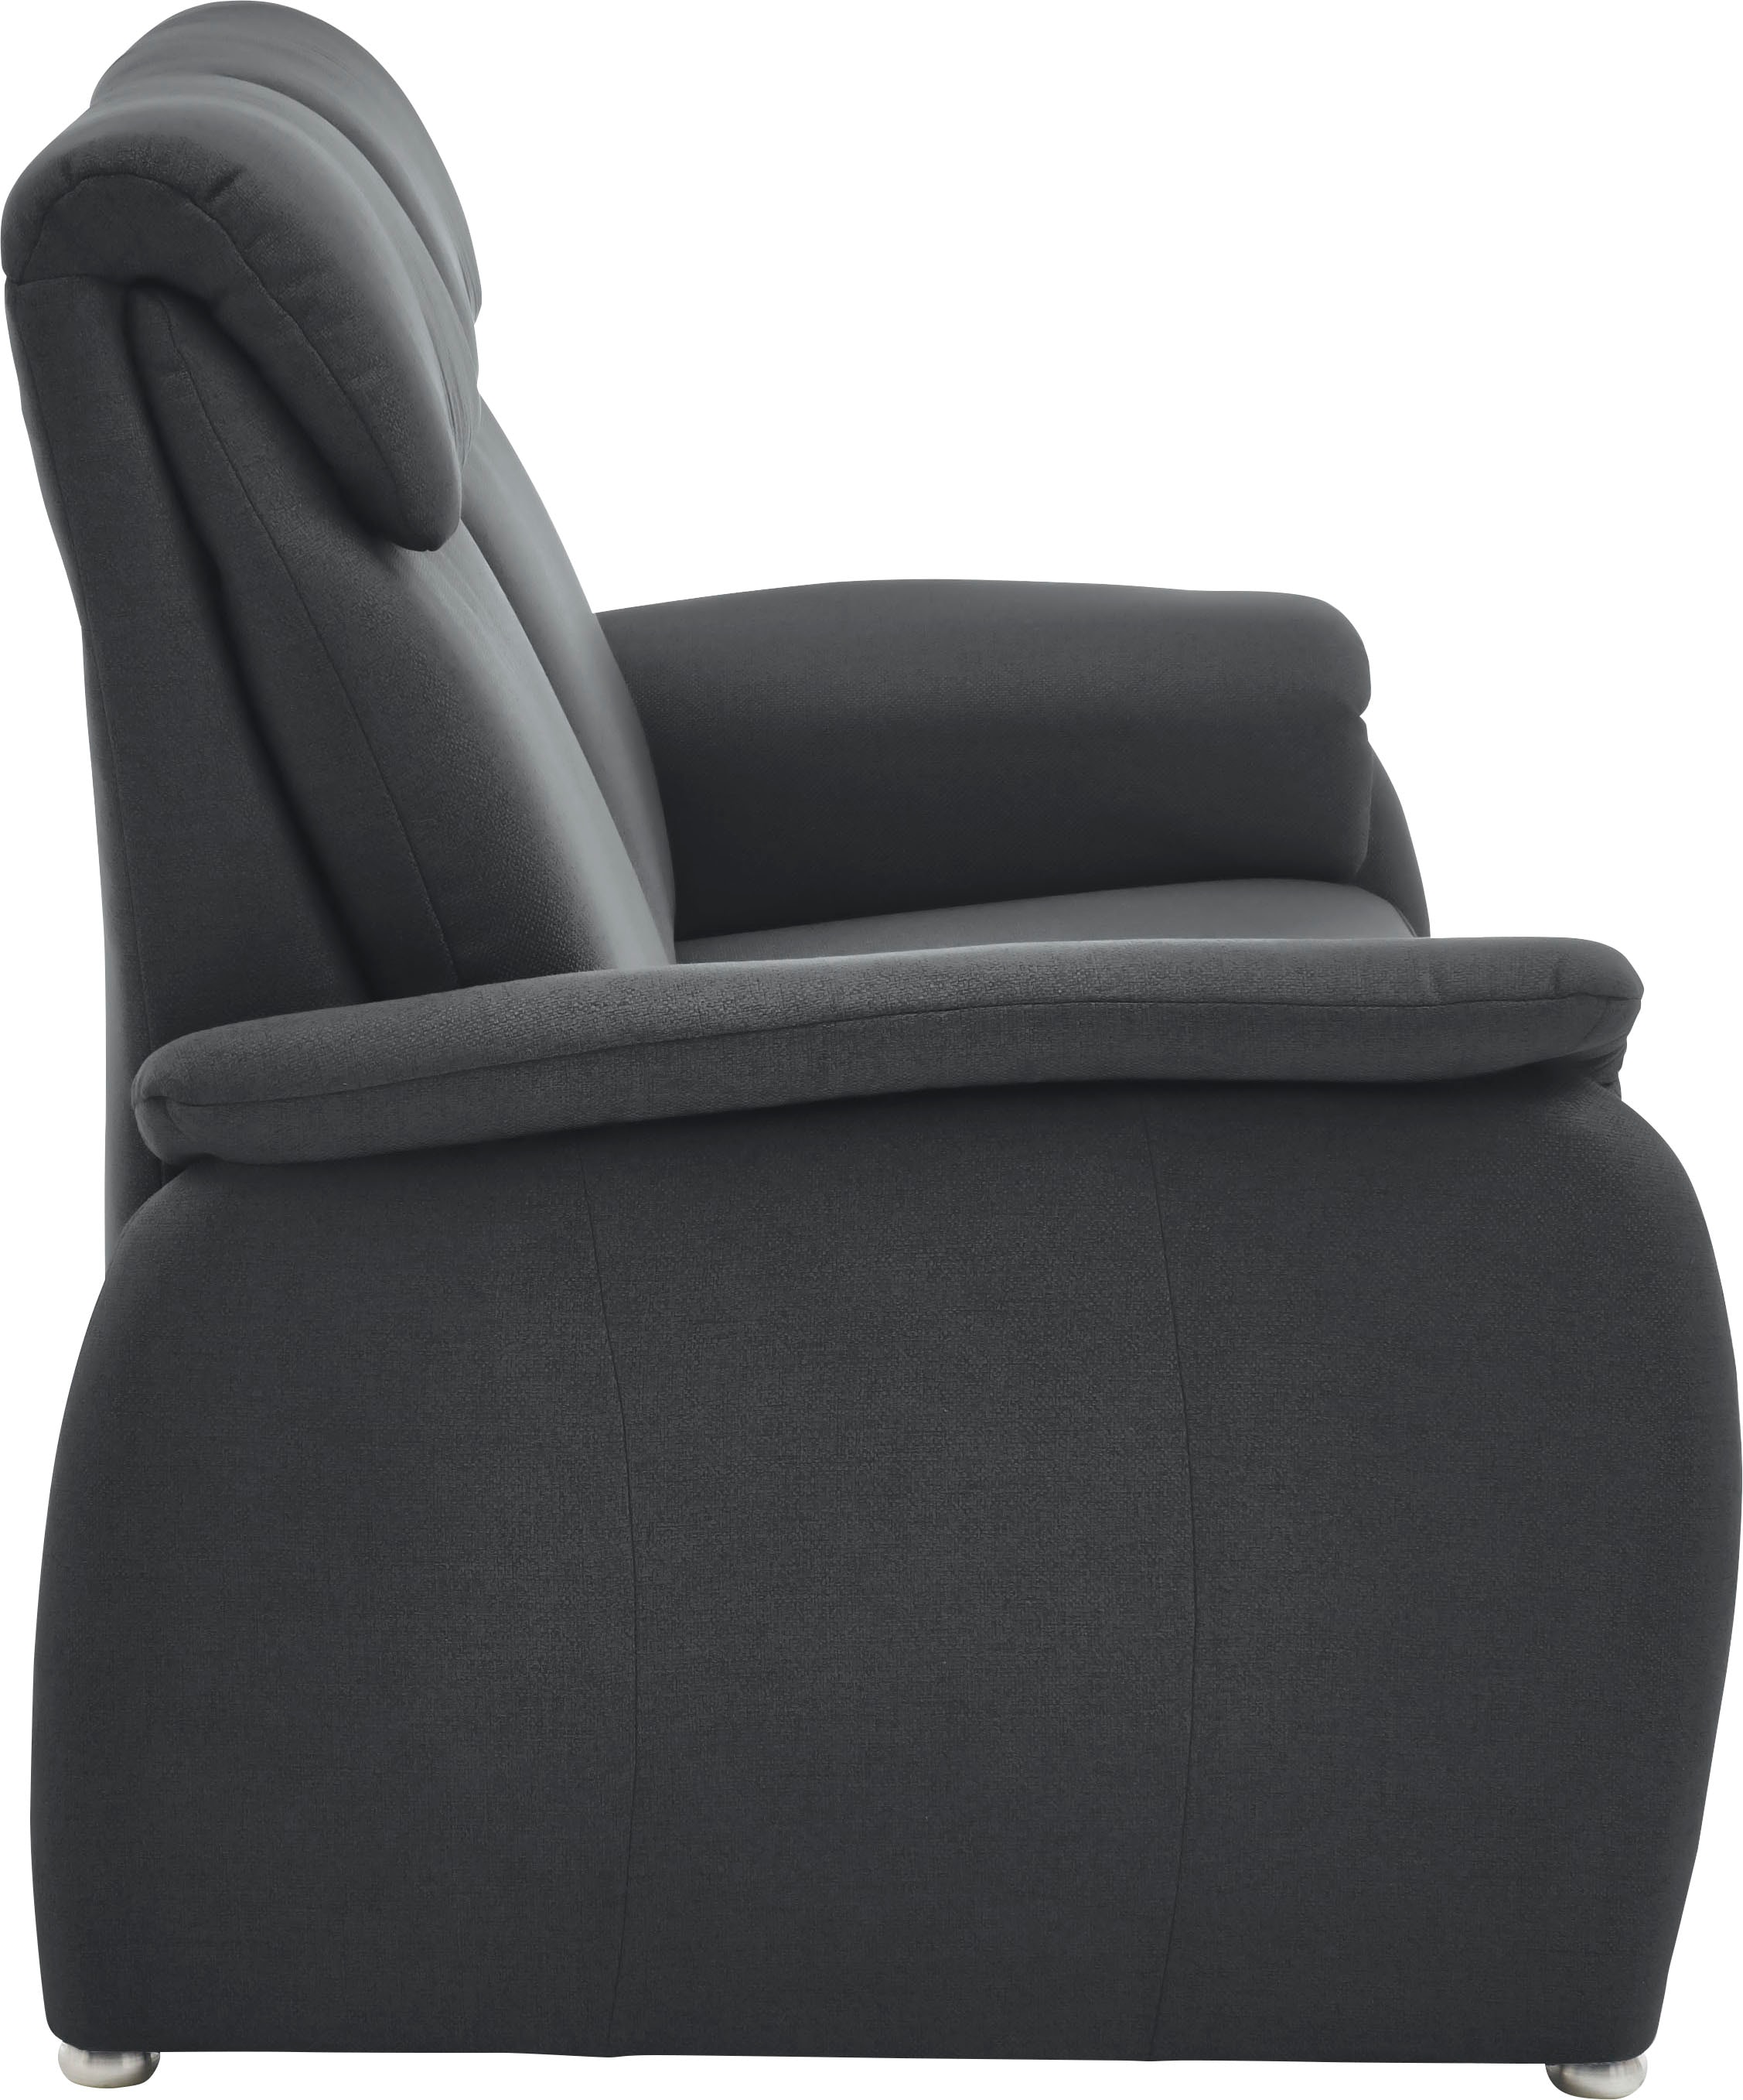 Home affaire 2-Sitzer »Turin  auch mit Easy care-Bezug: leicht mit Wasser zu reinigen«, mit hochwertigem Federkern, hoher Rücken bietet besonderen Komfort